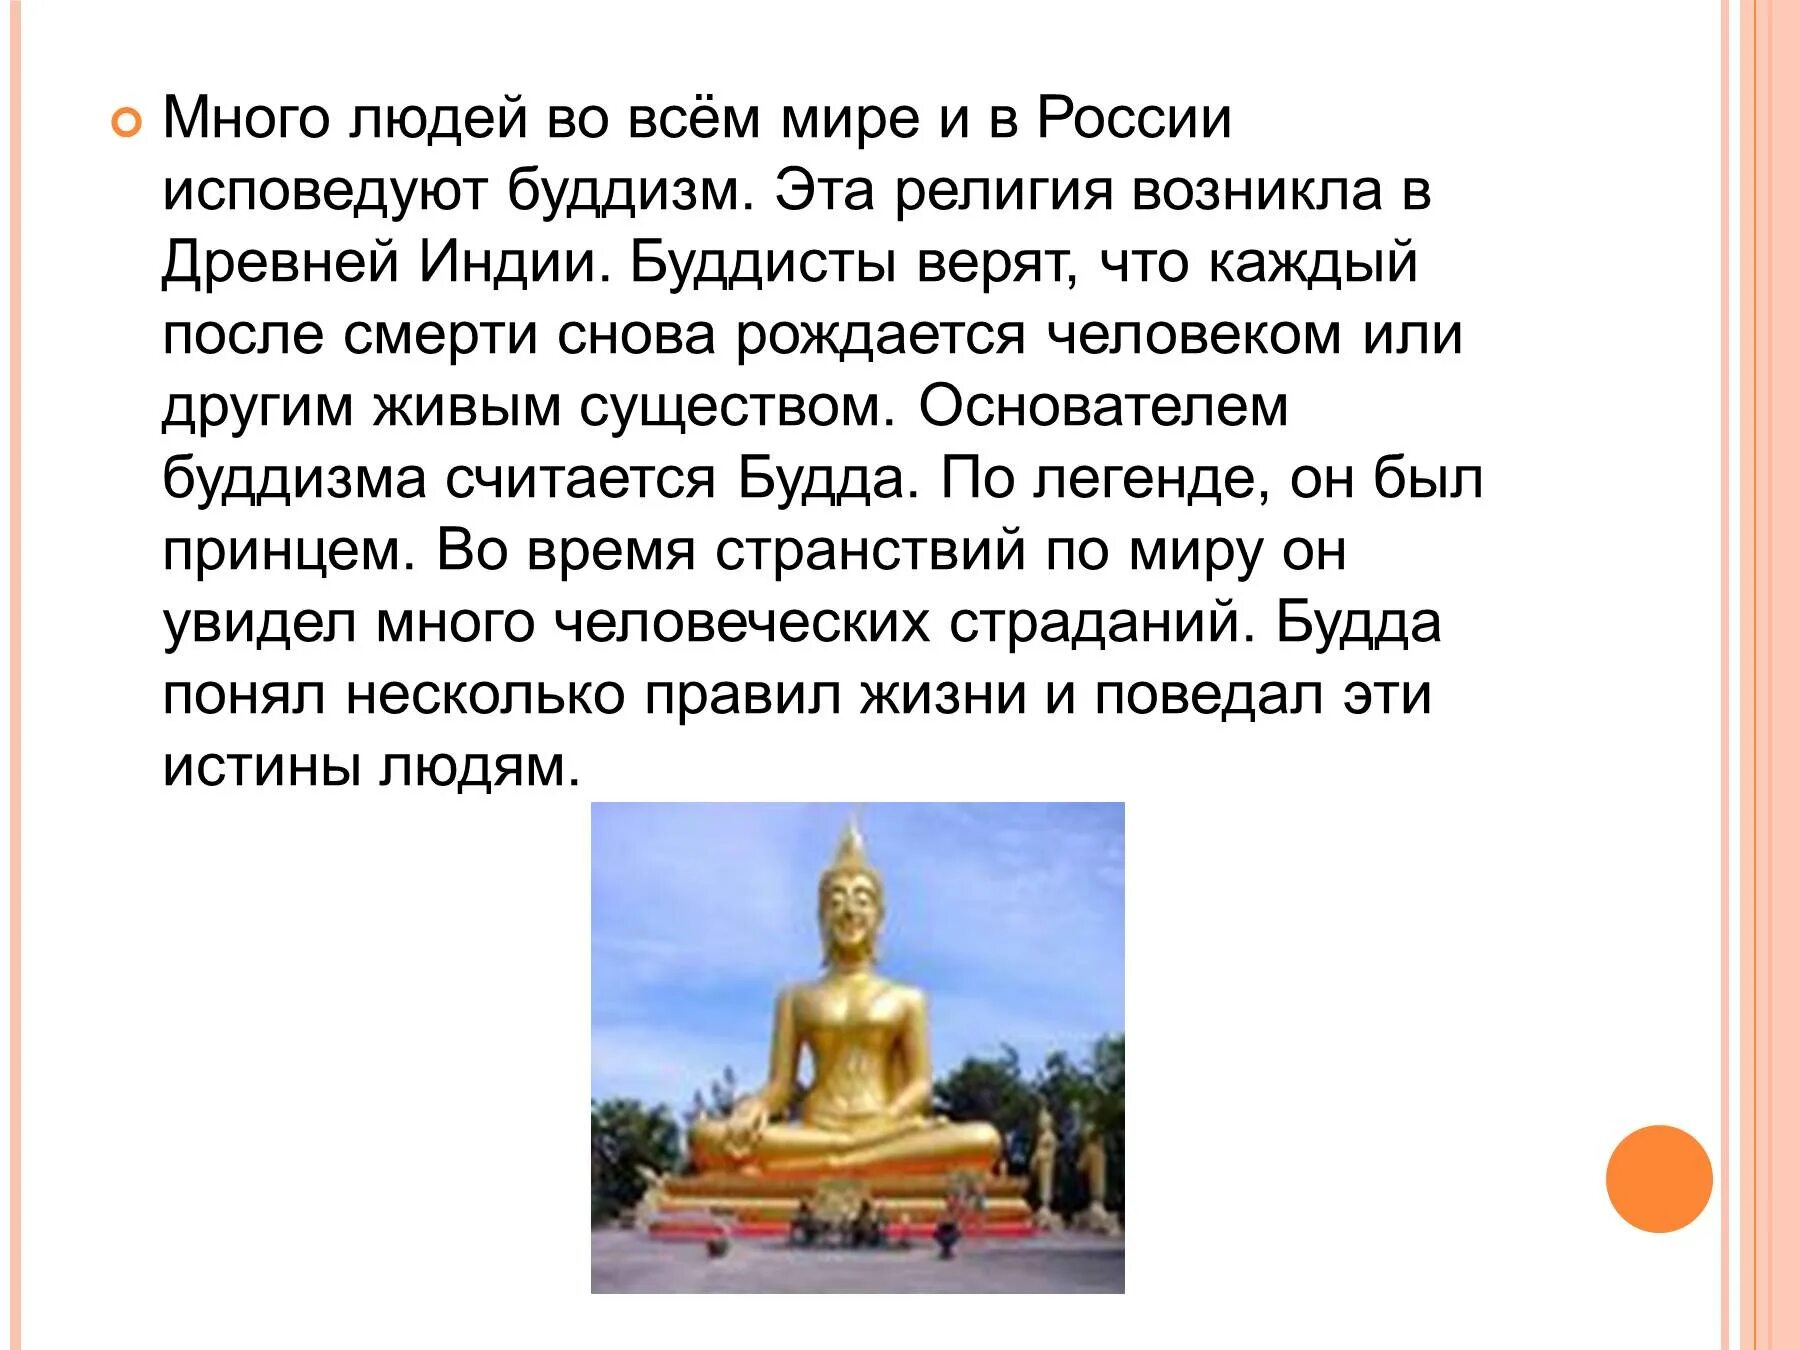 После смерти в буддизме. Народы России исповедующие буддизм. Буддизм в России исповедуют. Народы которые исповедуют буддизм. Народы исповедующие буддизм.